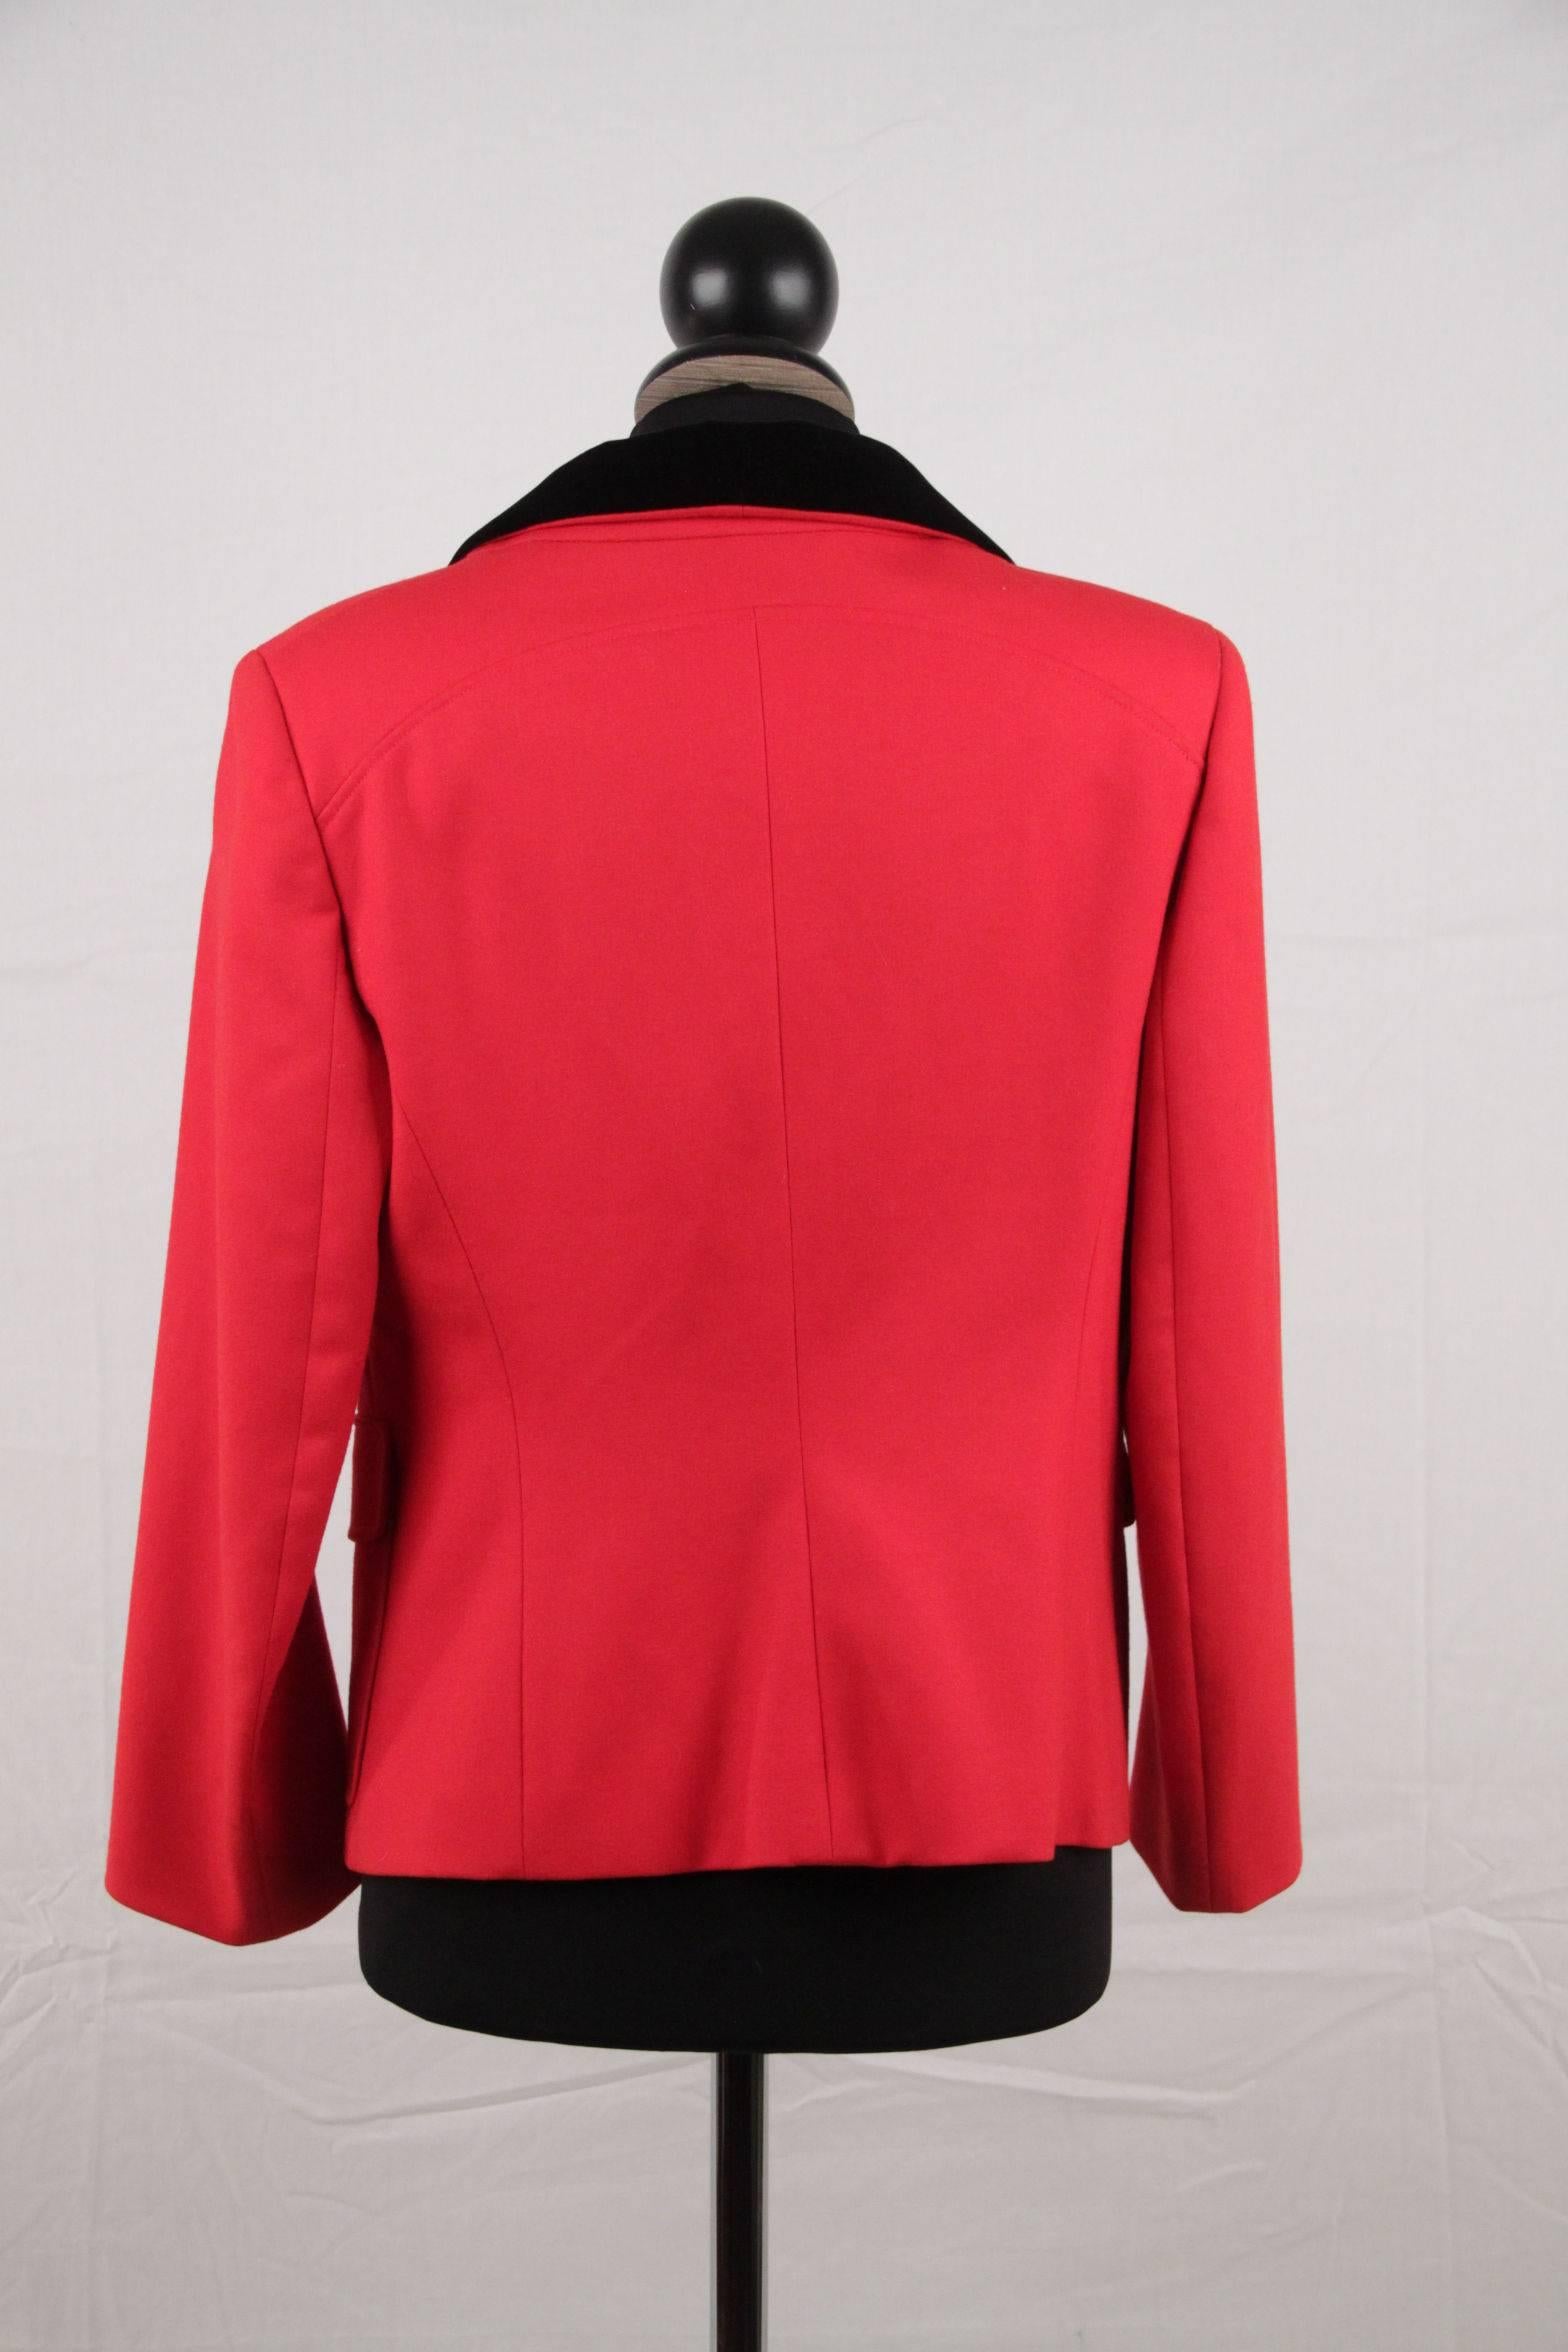 BALENCIAGA Red Wool BLAZER Jacket EQUESTRIAN Style SIZE 38 2